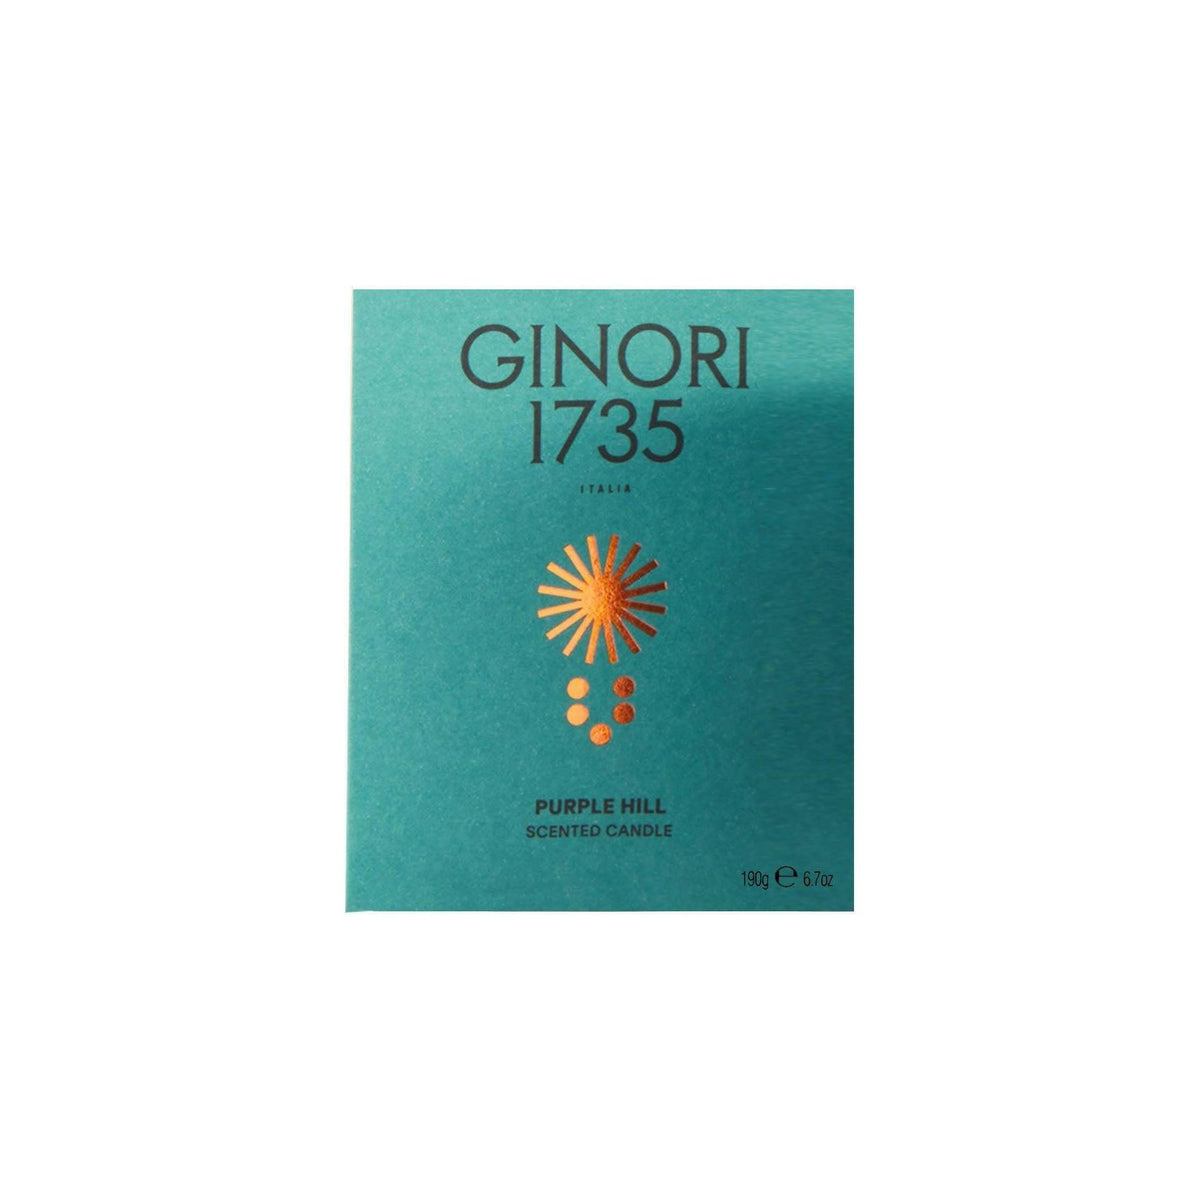 GINORI 1735 - Purple Hill Scented Candle Refill For Il Seguace 190 Gr - JOHN JULIA